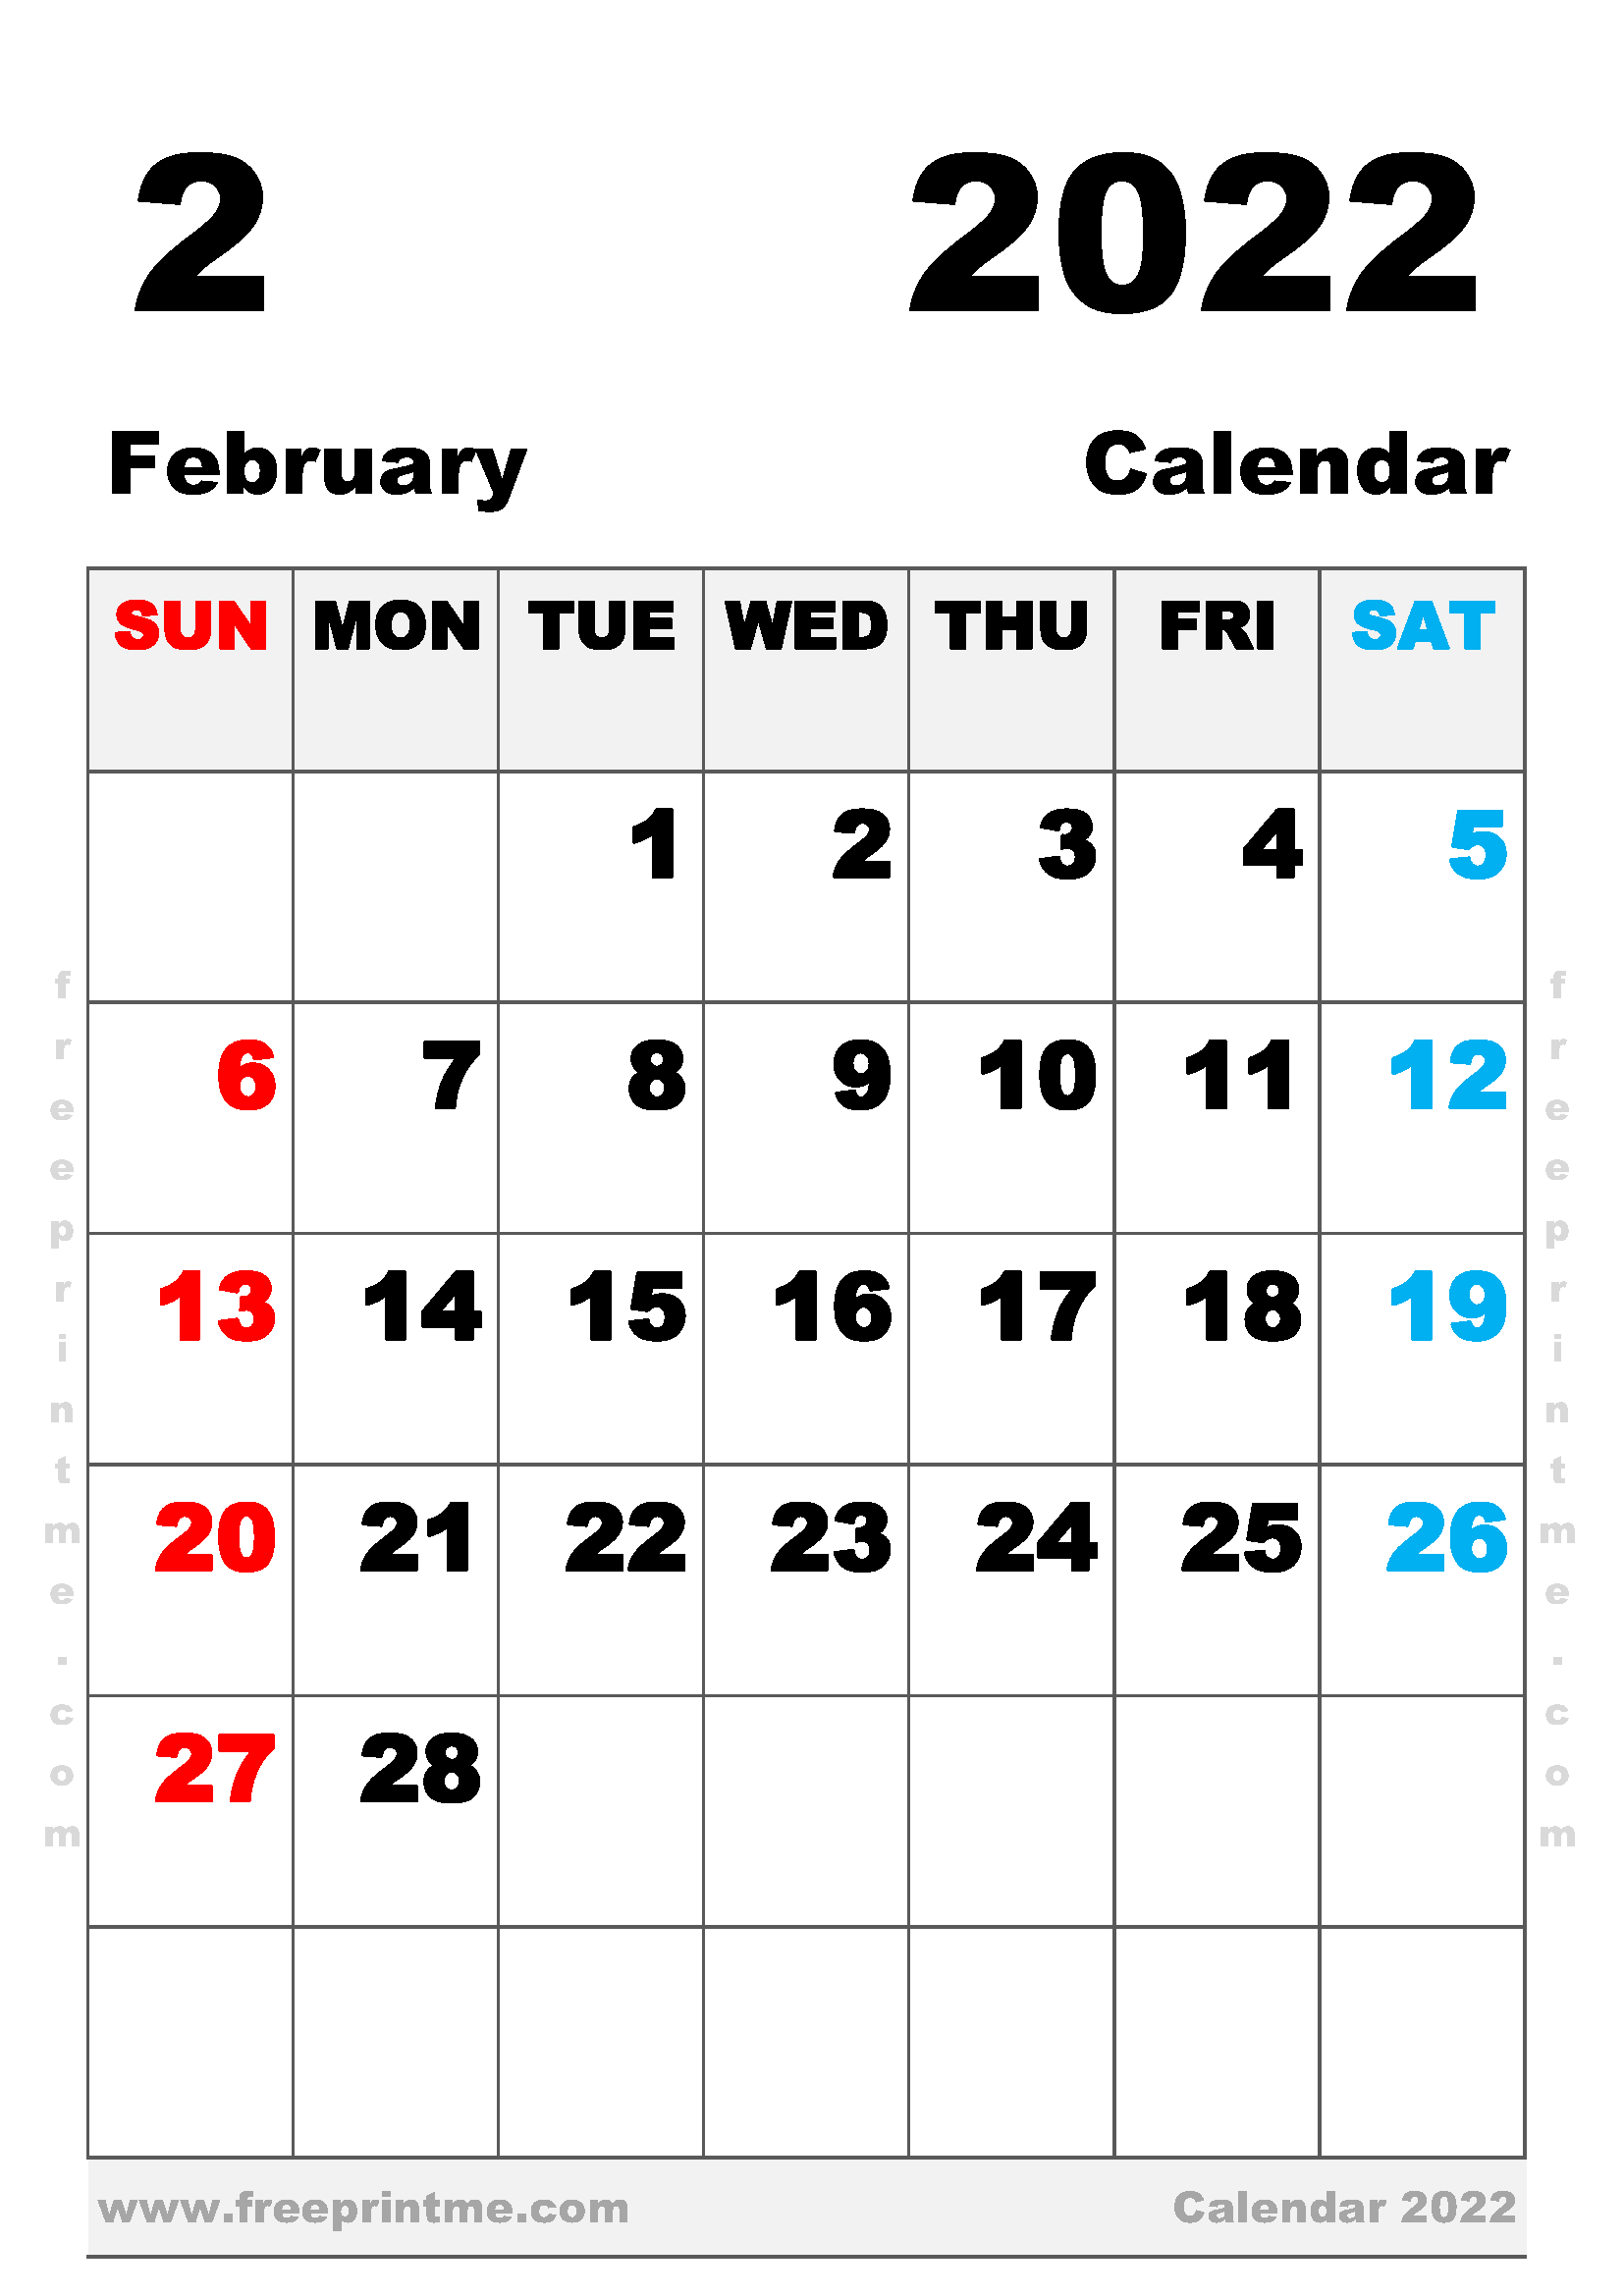 Free February 2022 Calendar Free Printable February 2022 Calendar A4